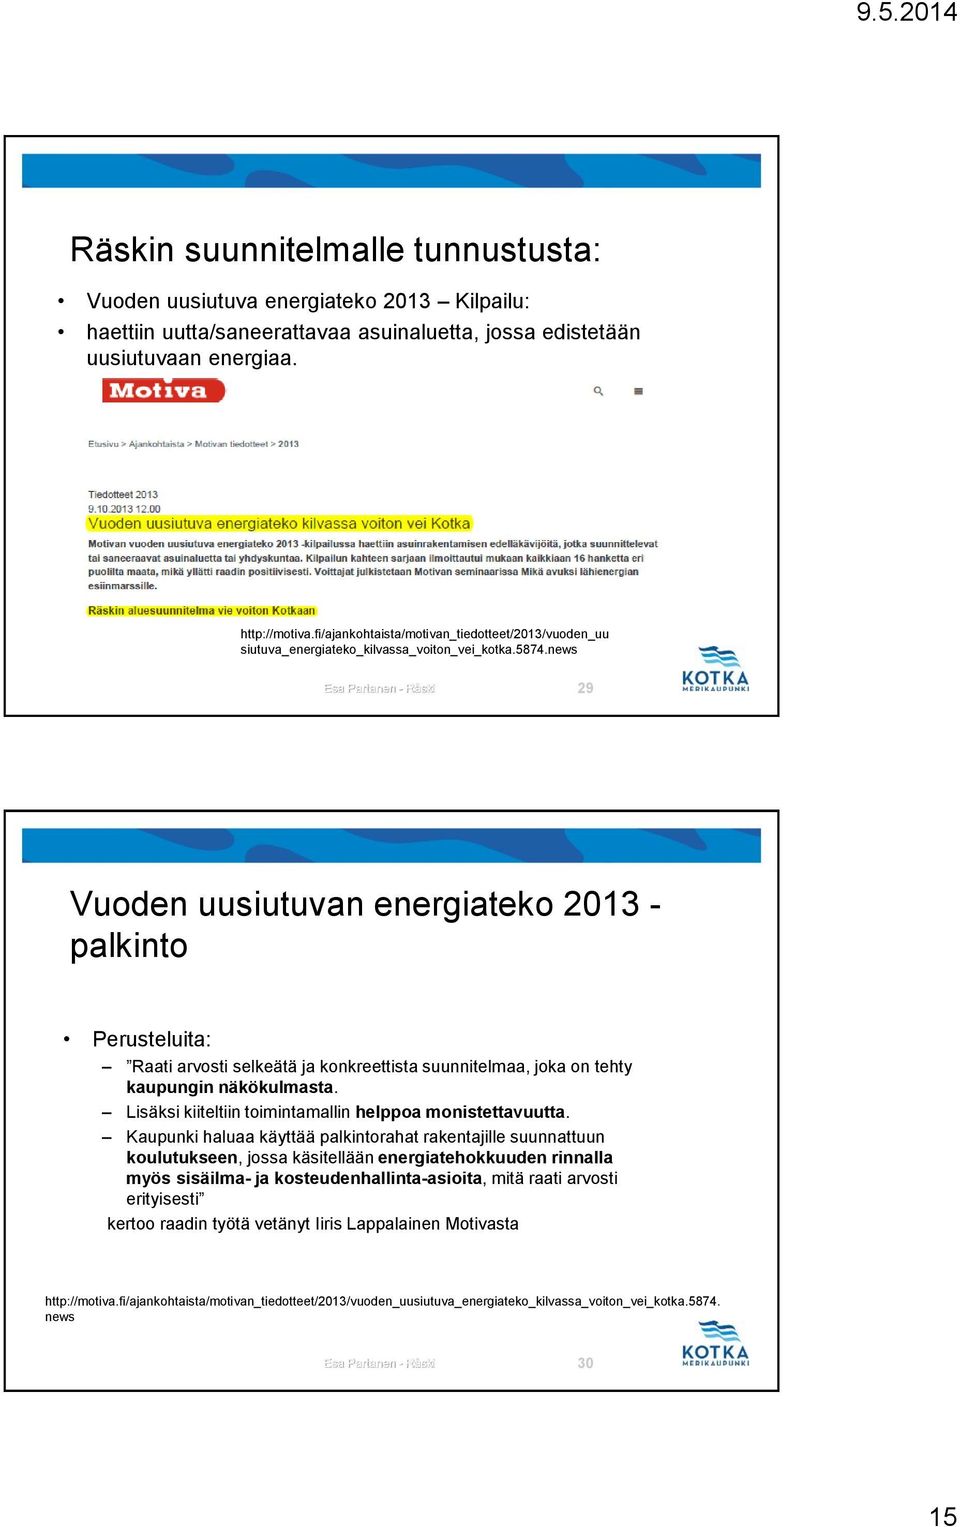 news Esa Partanen - Räski 29 Vuoden uusiutuvan energiateko 2013 - palkinto Perusteluita: Raati arvosti selkeätä ja konkreettista suunnitelmaa, joka on tehty kaupungin näkökulmasta.